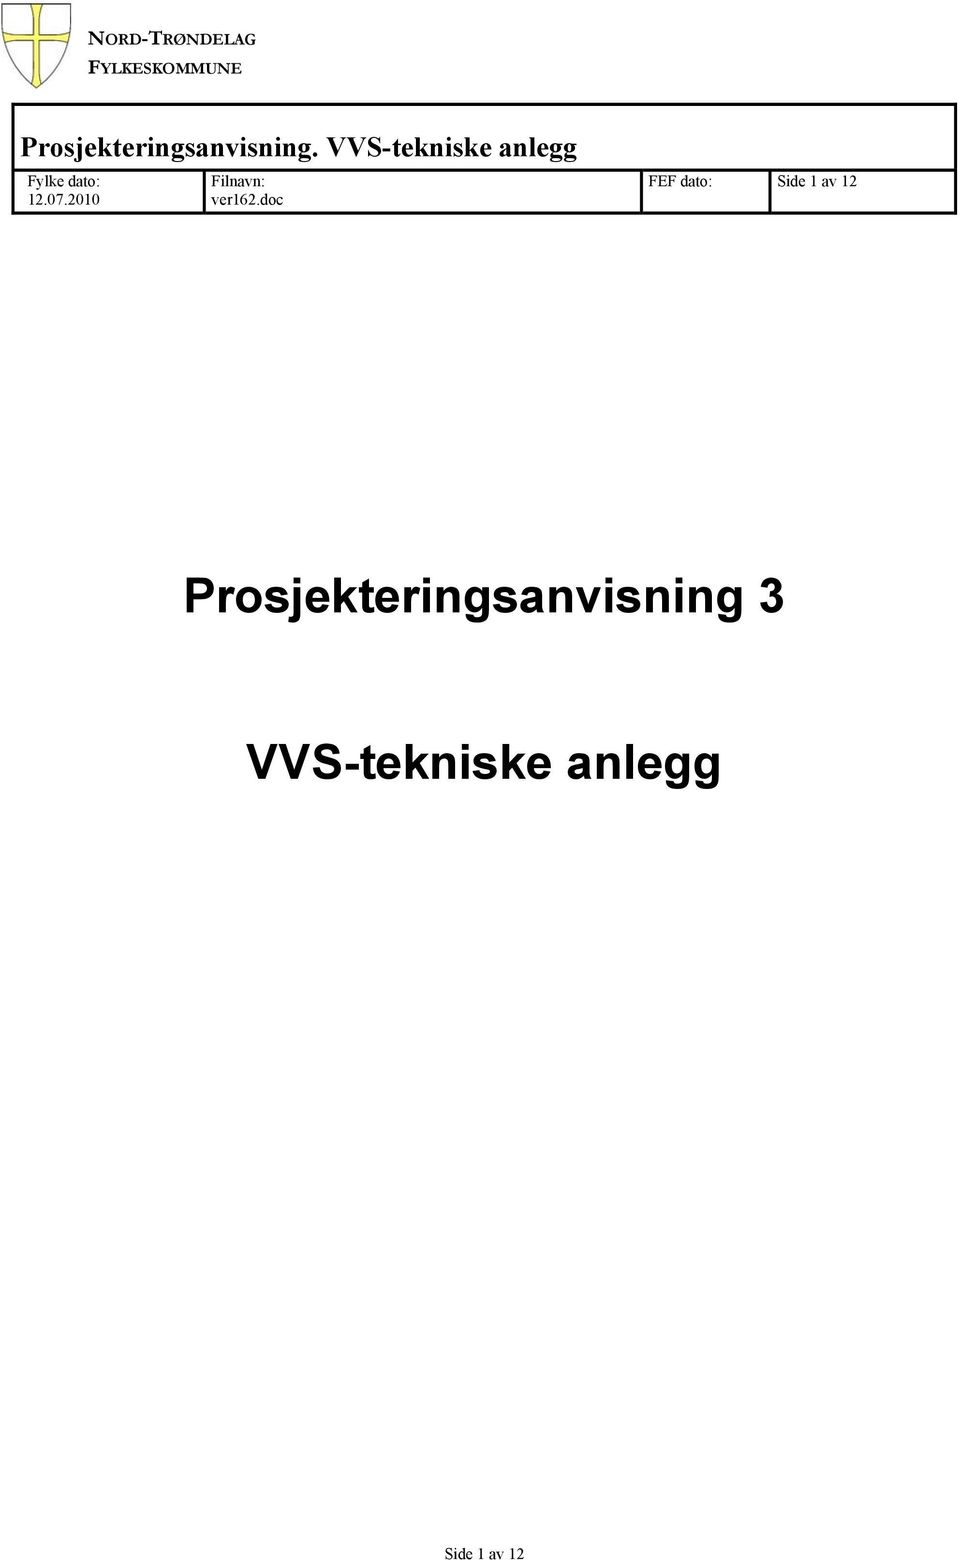 VVS-tekniske anlegg Fylke dato: 12.07.